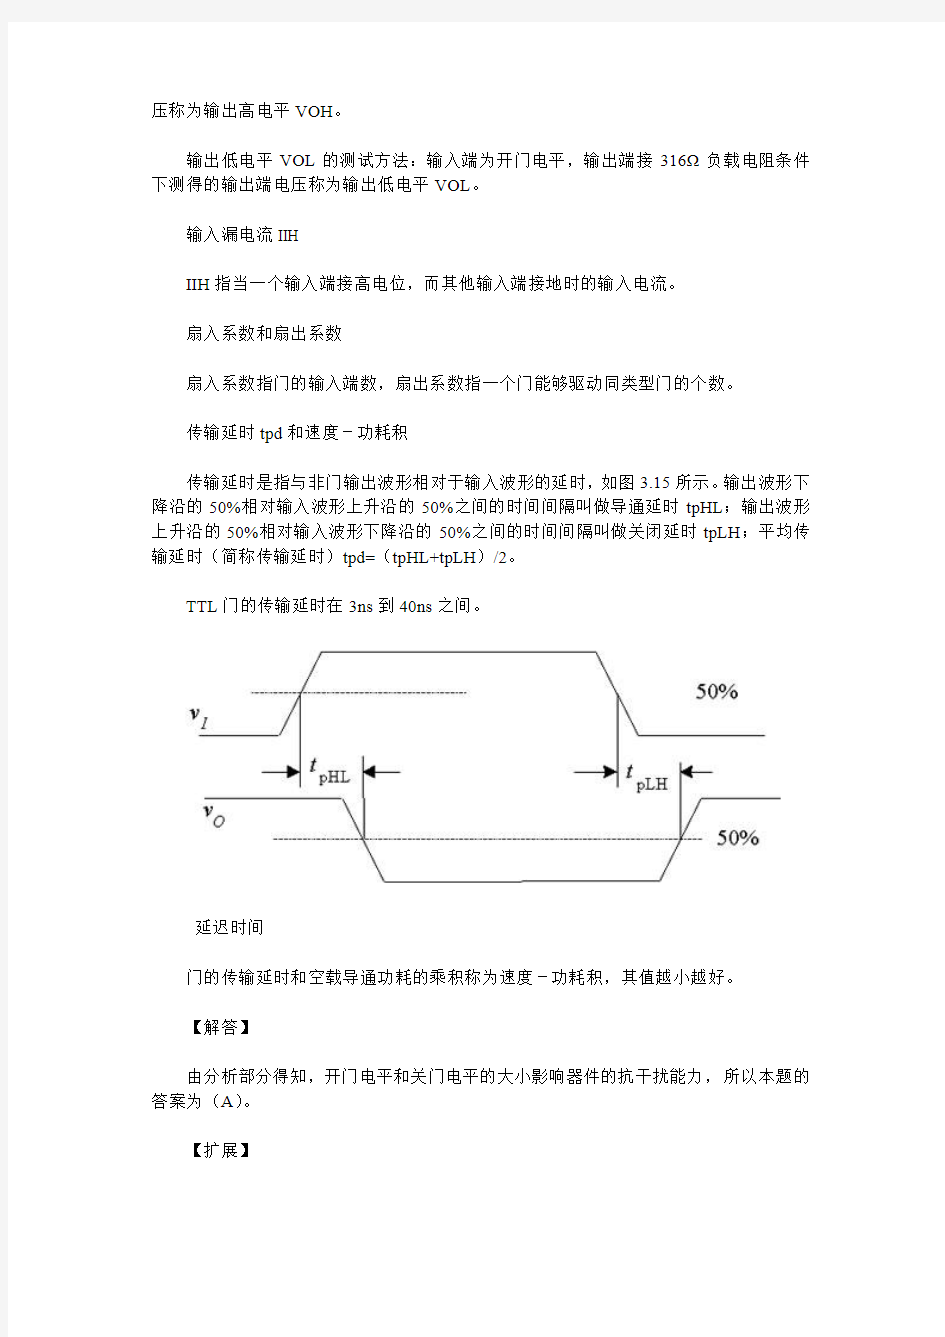 北京邮电大学1997年试题 TTL与非门的开门电平和关门电平的大小